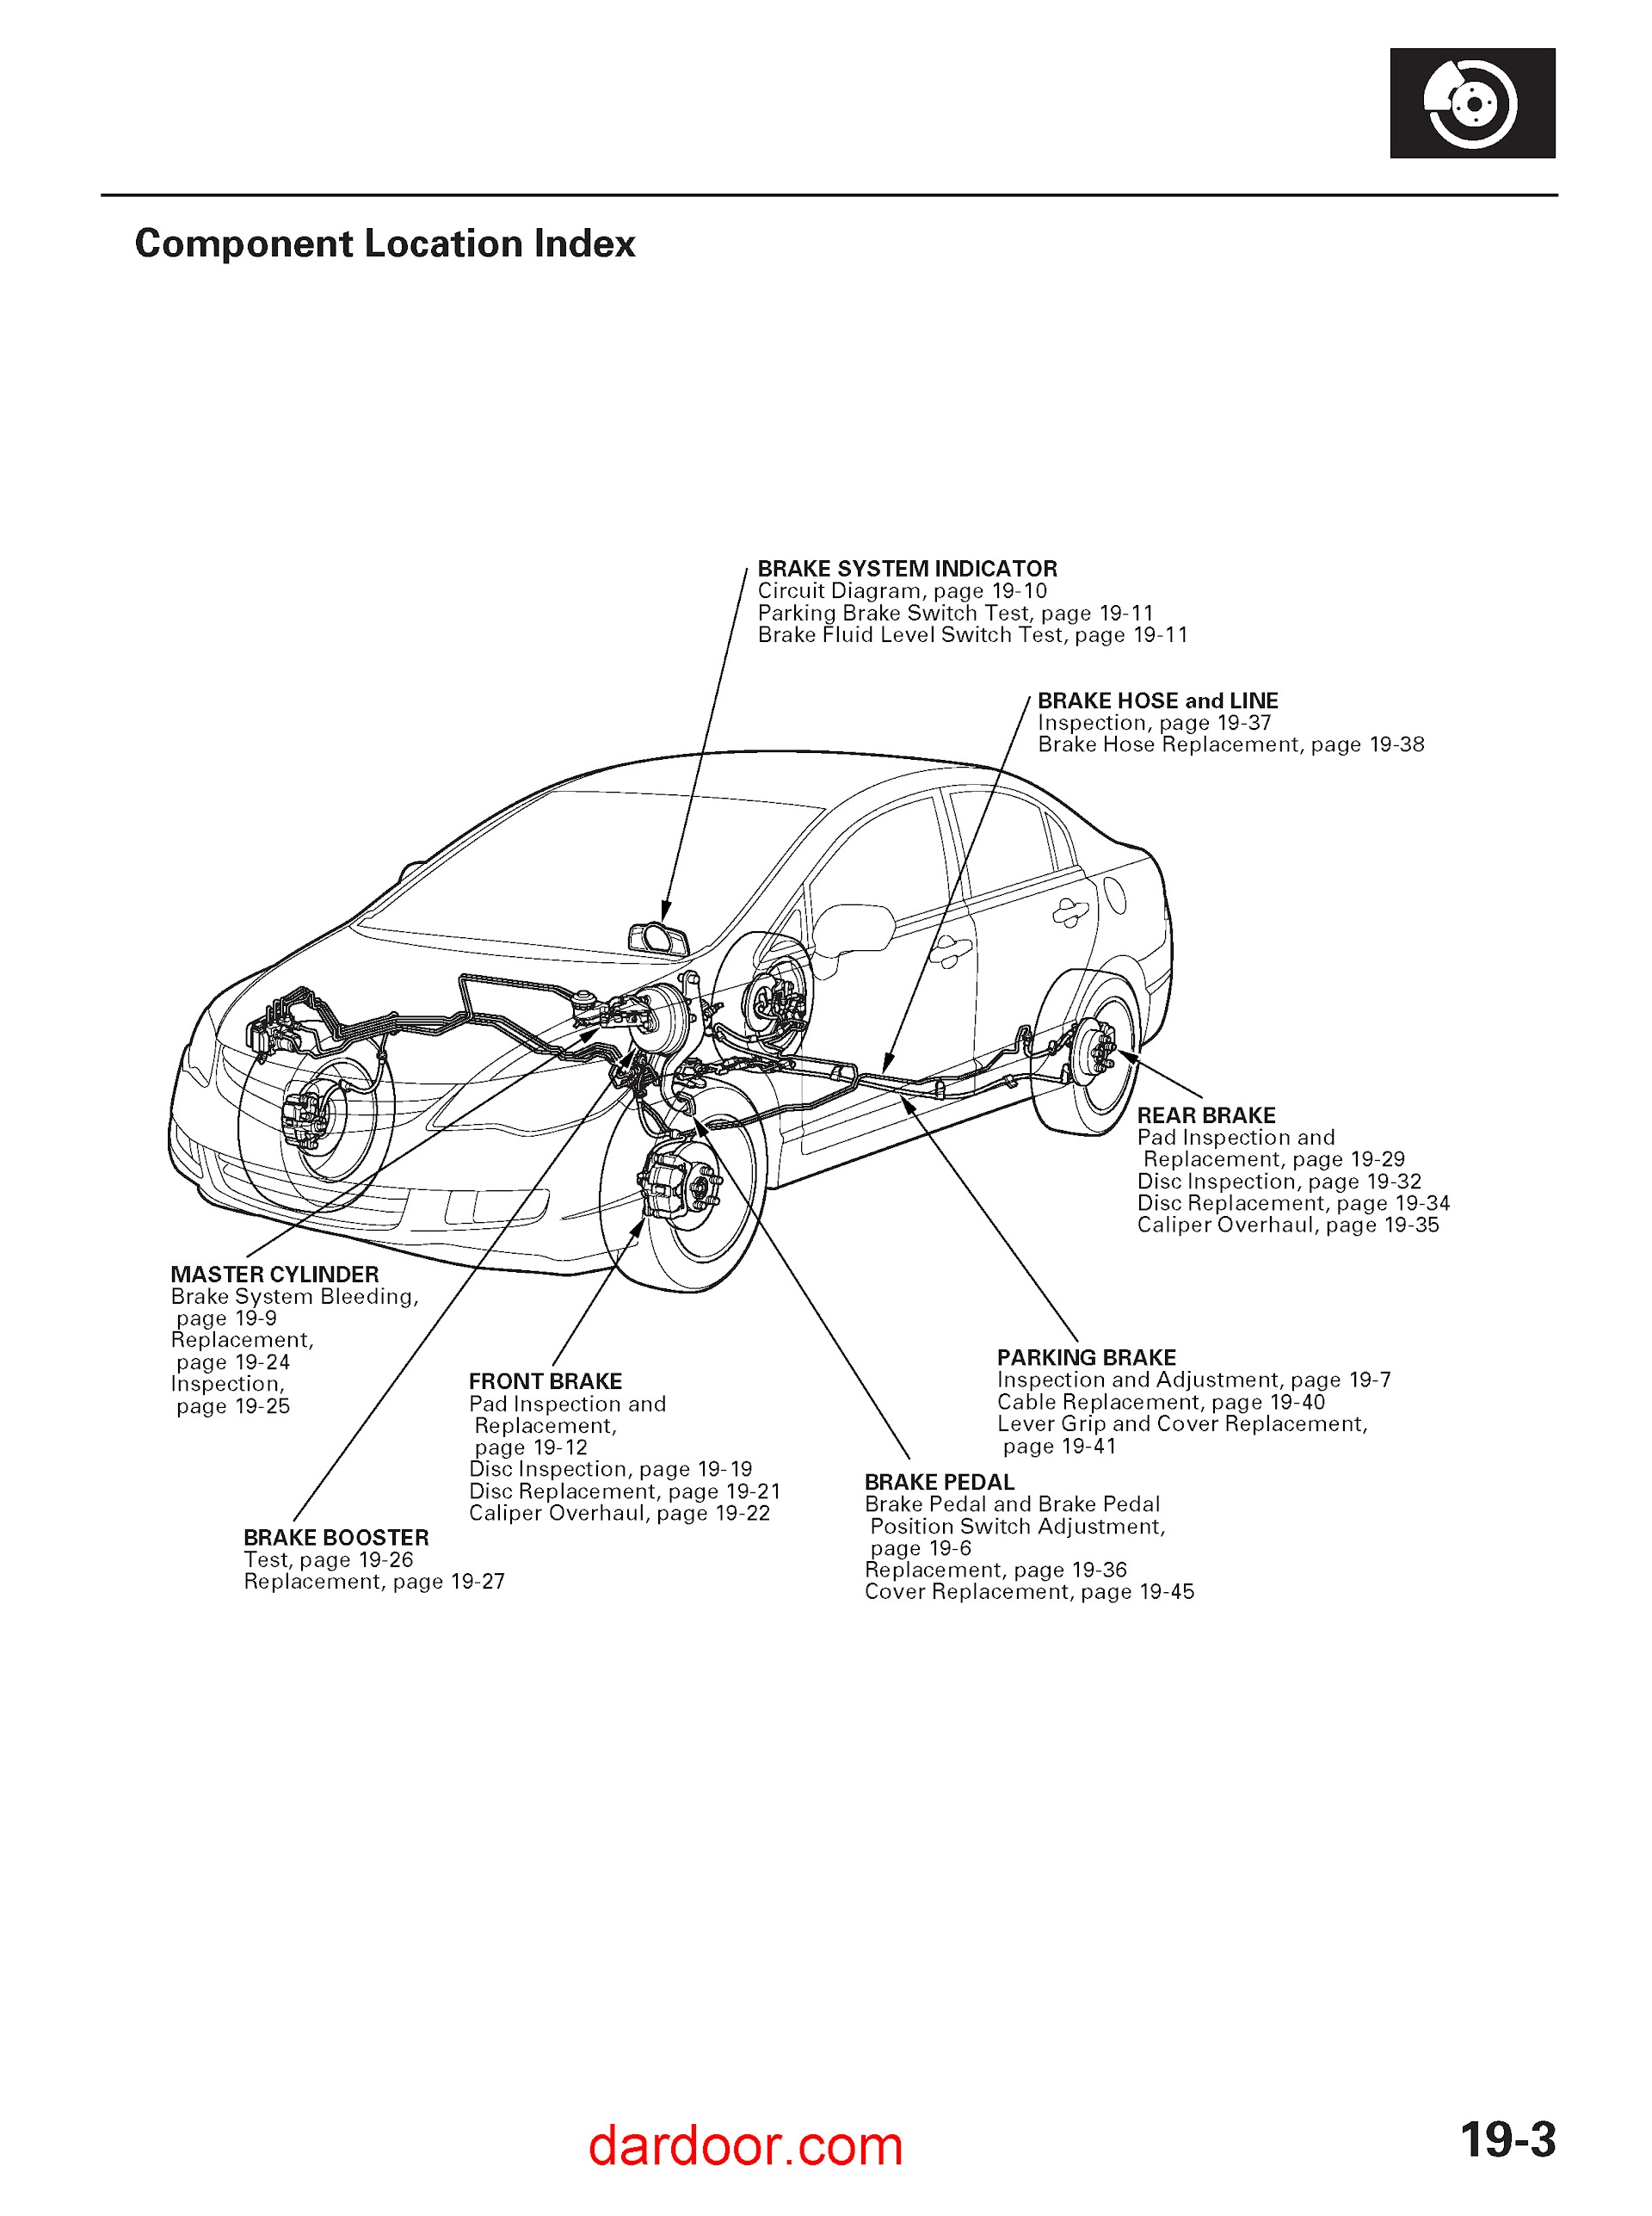 Download 2006-2009 Acura CSX Service Repair Manual